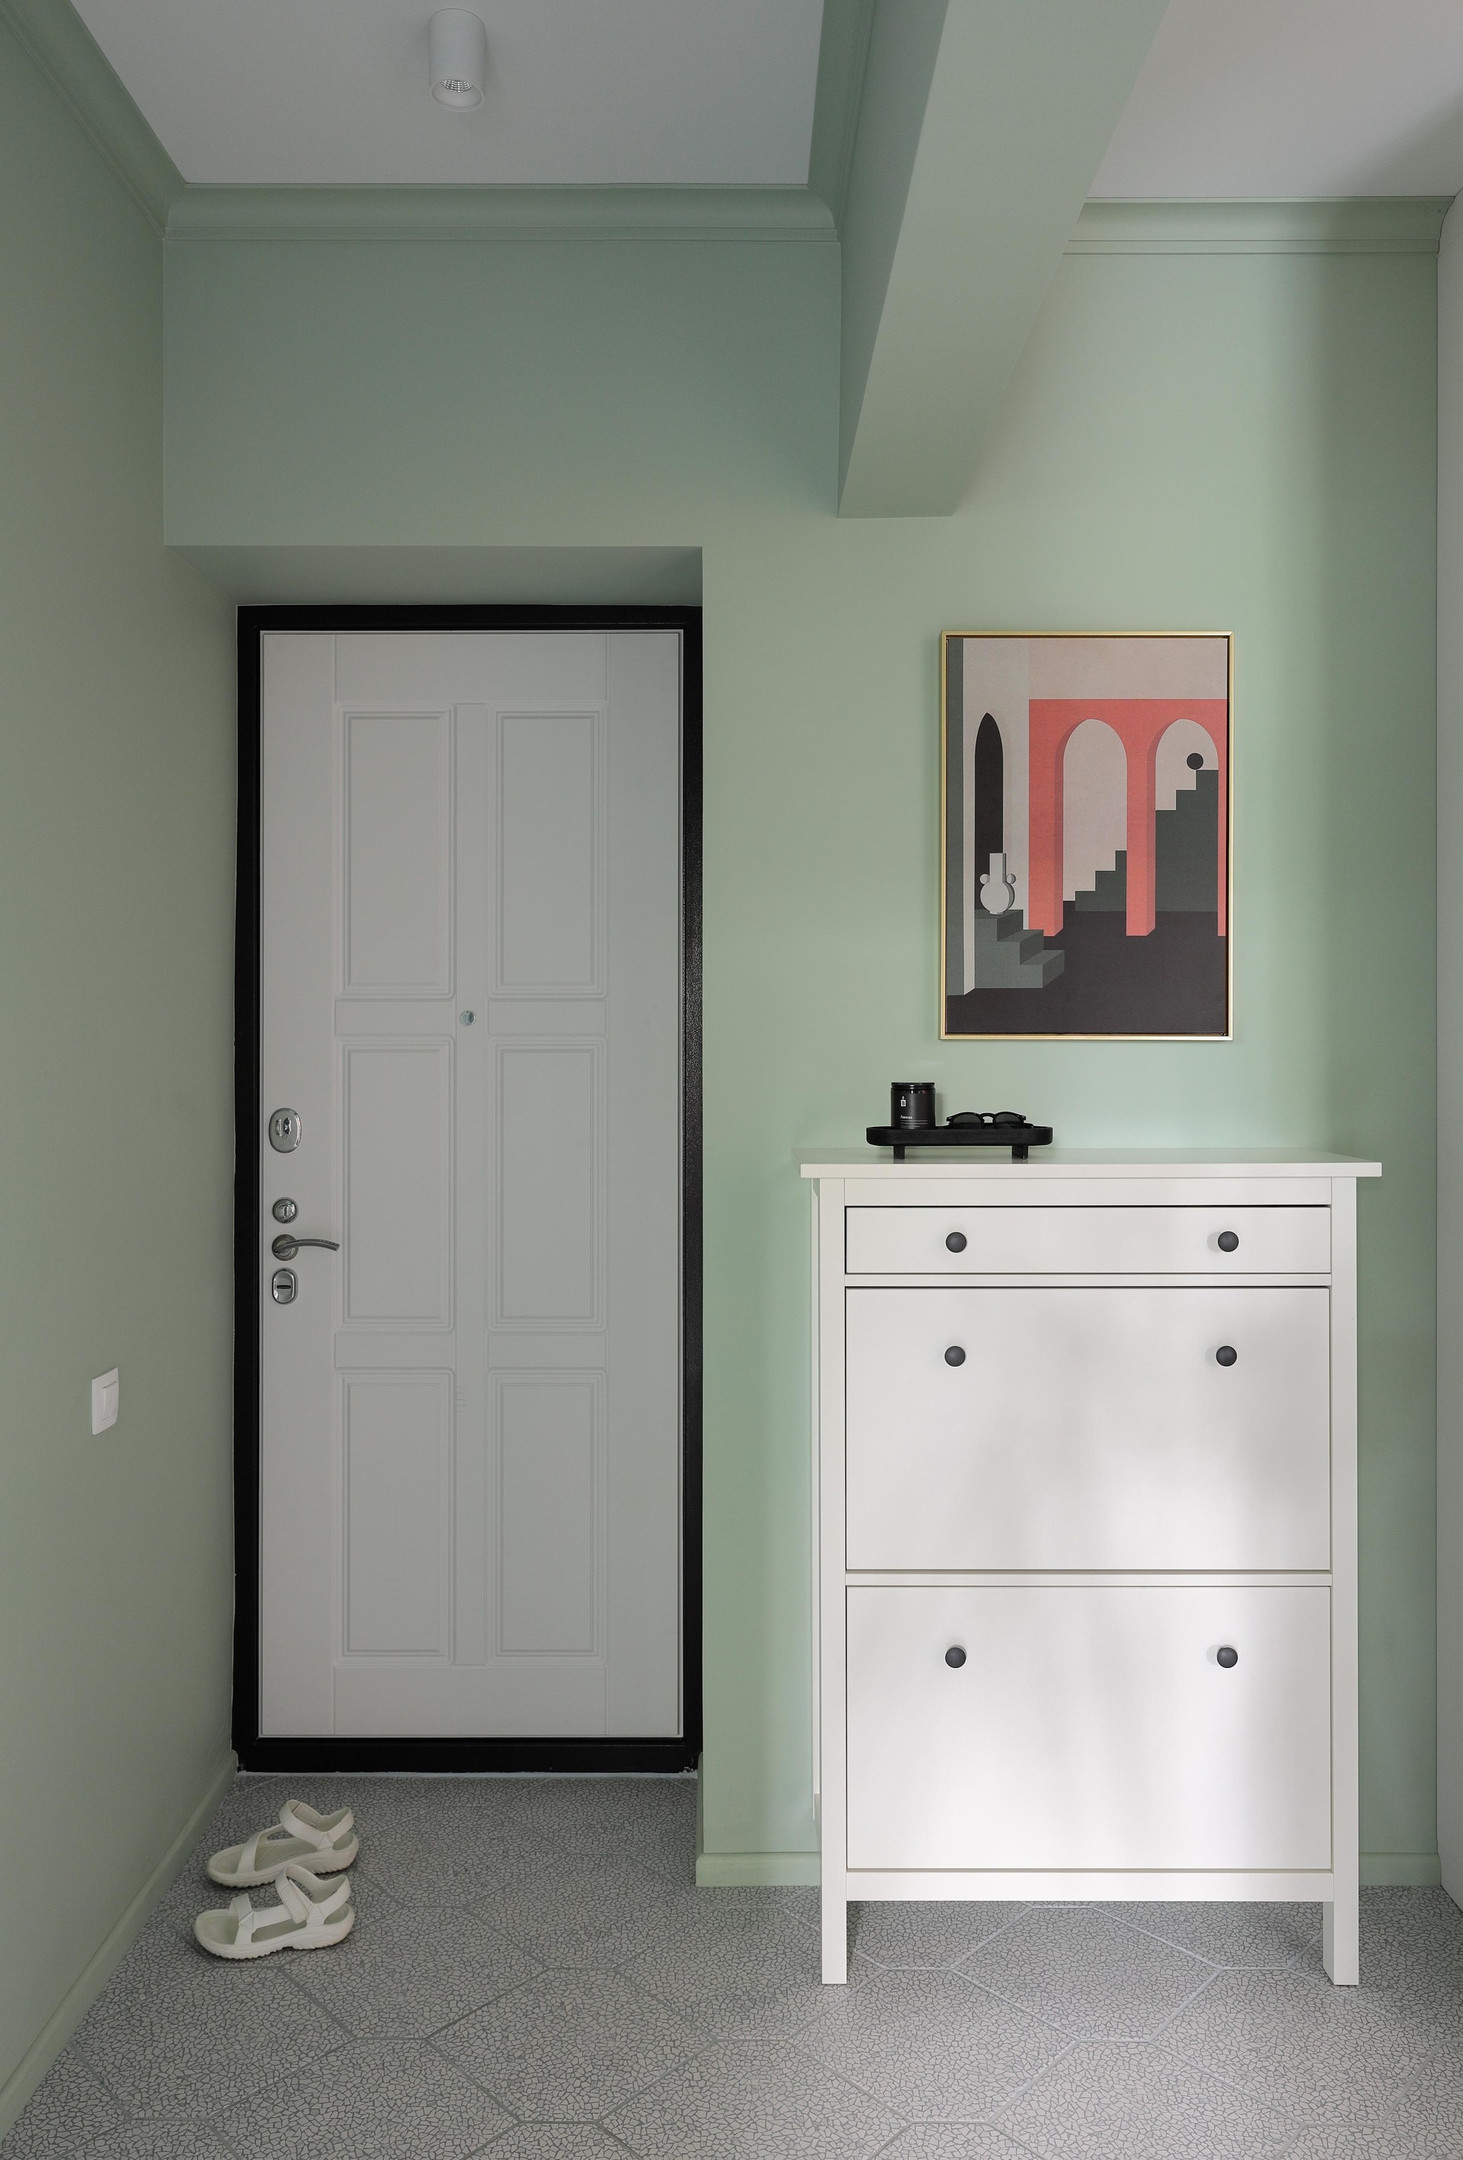 Lối vào căn hộ lựa chọn sắc xanh bạc hà tươi mát cho màu sơn tường, tương phản nhẹ nhàng với cửa ra vào, trần nhà và chiếc tủ lưu trữ đồng màu trắng sạch sẽ.